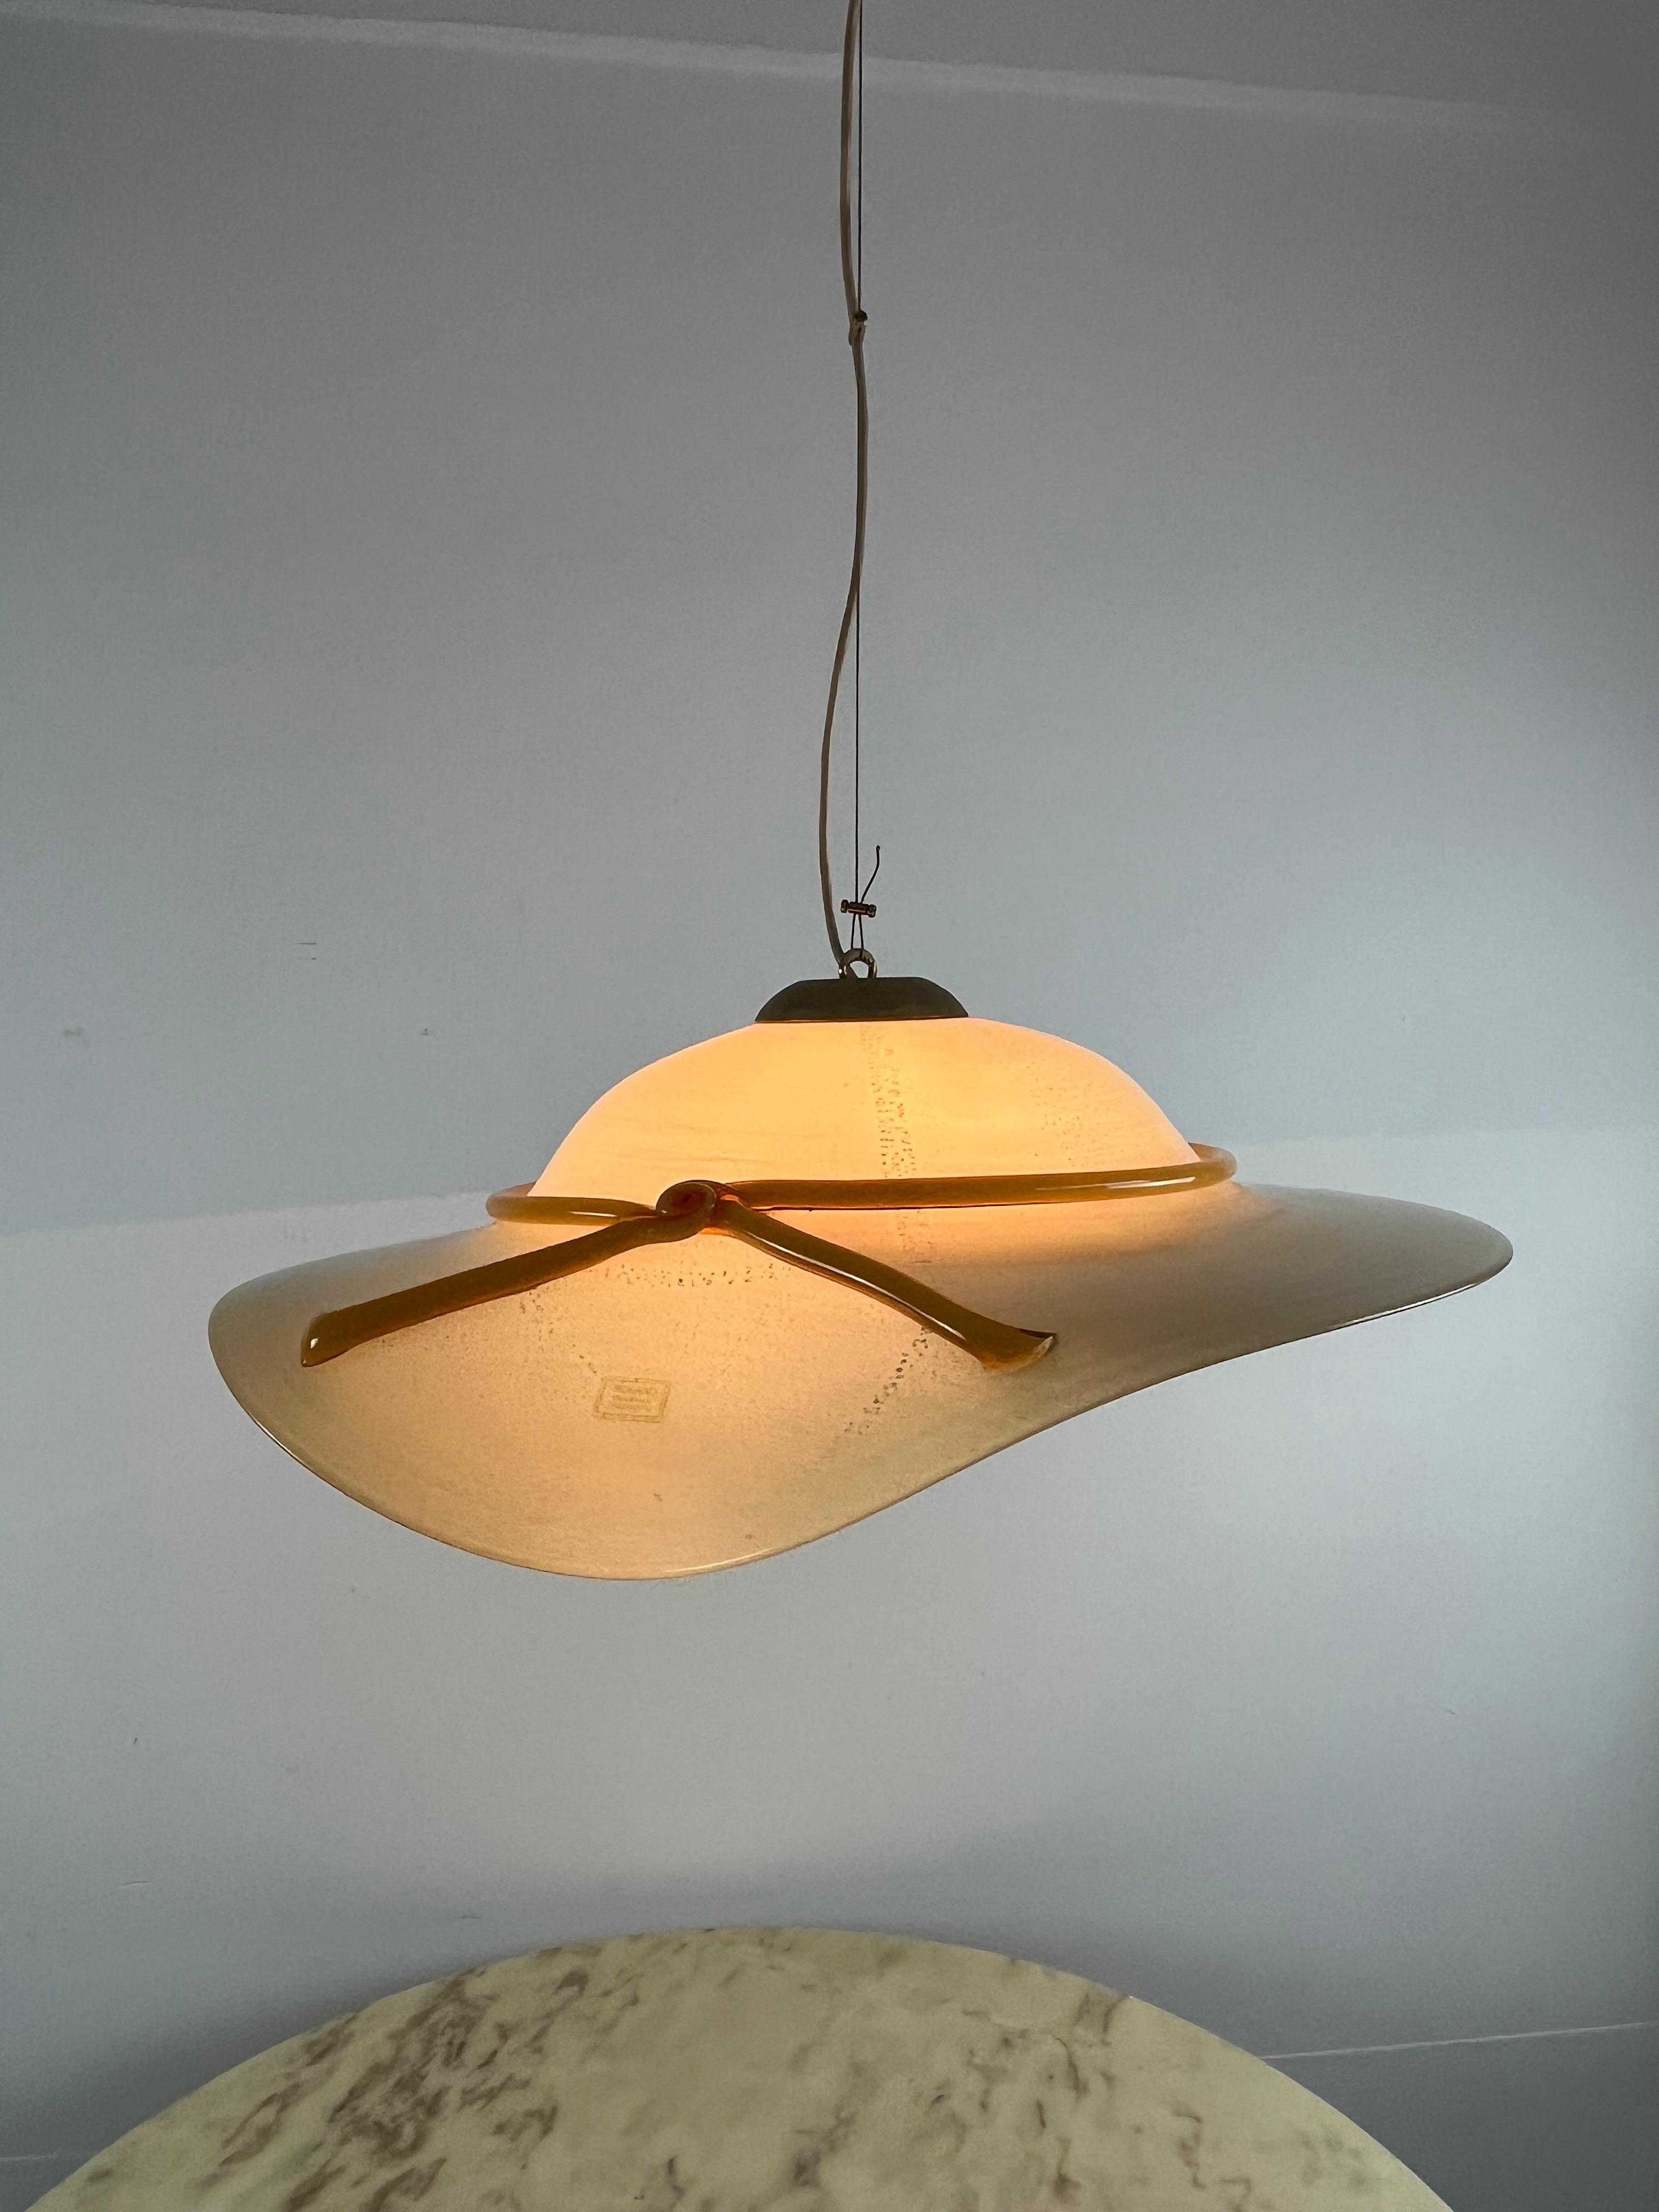 Lampe suspendue vintage en verre de Murano, Italie, années 1970
Trouvée dans l'appartement d'un architecte d'intérieur, elle a un diamètre de 61 cm.
Il s'agit d'un très bel objet des années 70. Intact et fonctionnel, petits signes de vieillissement.
